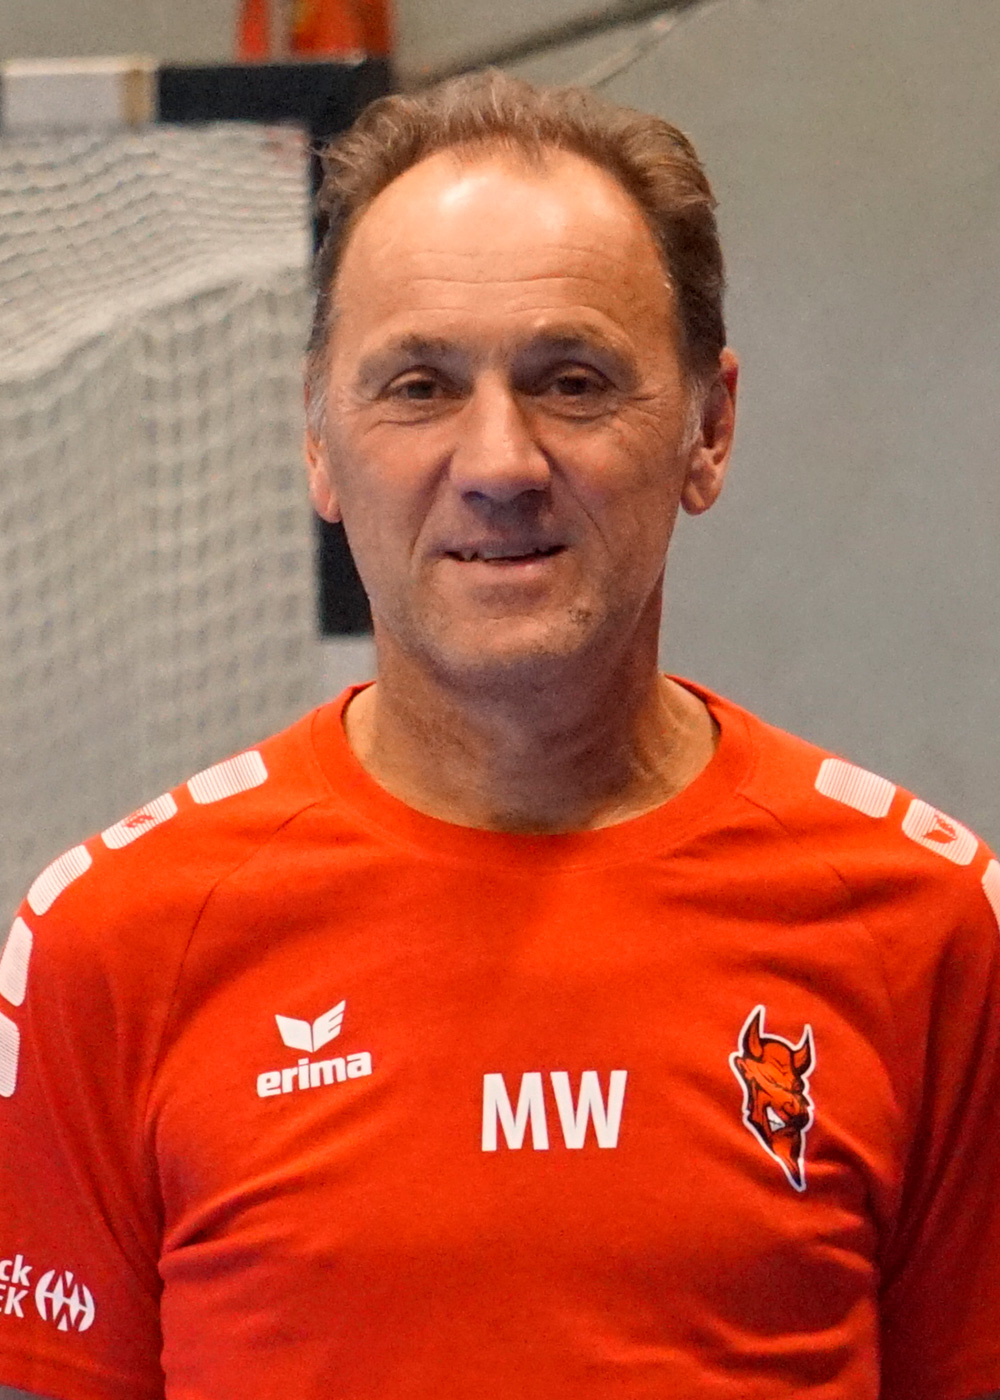 Michael Woellert